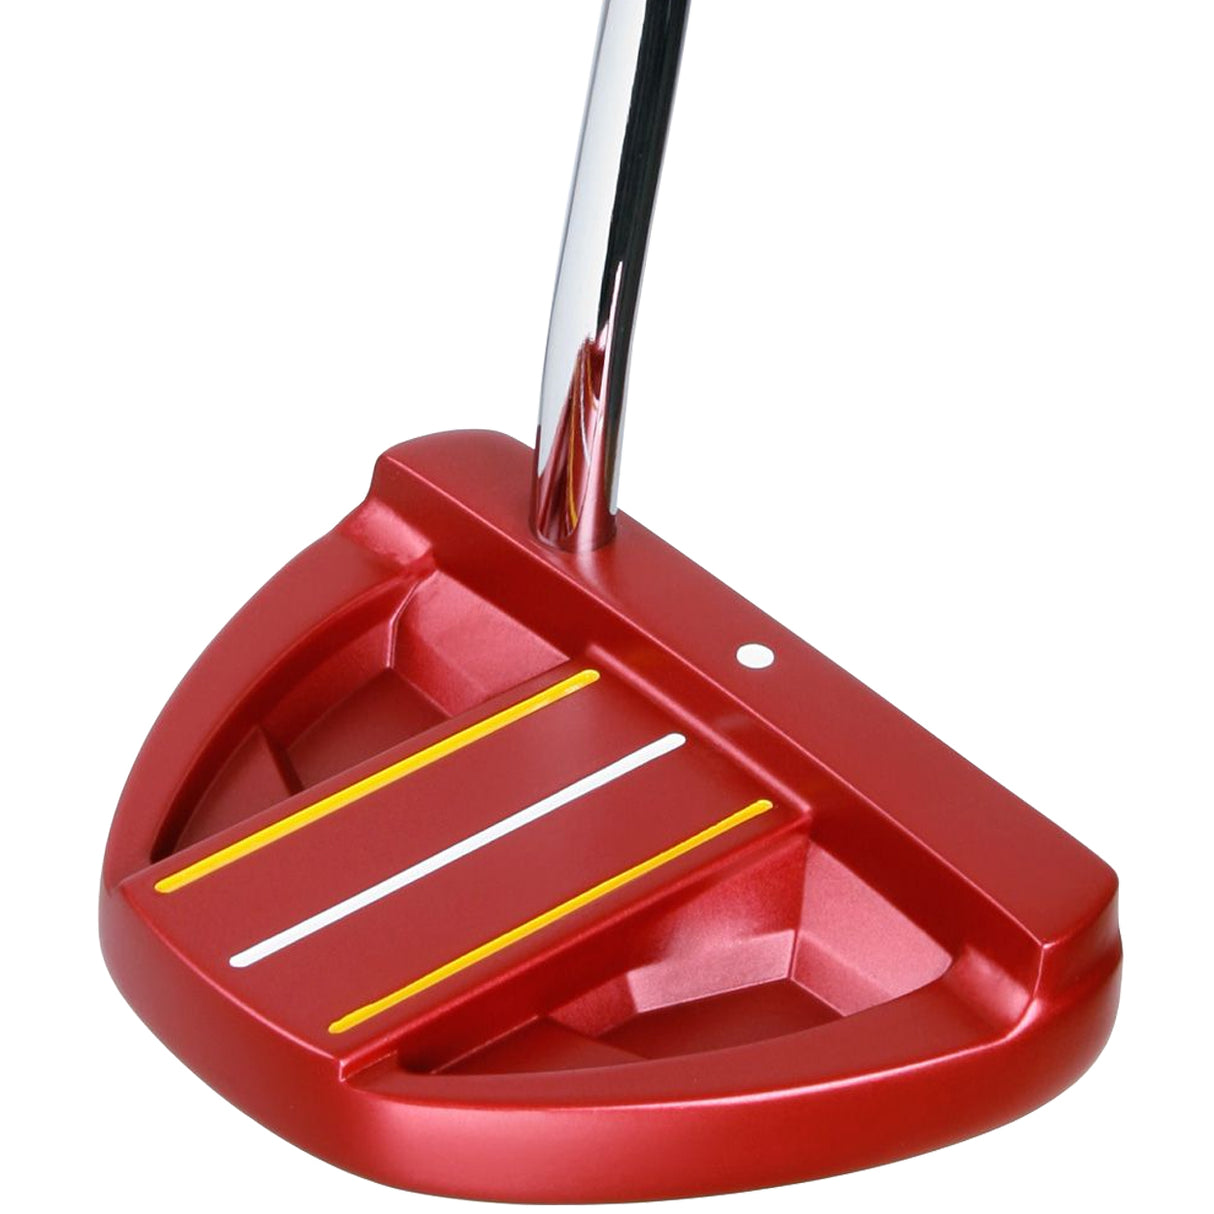 Orlimar Golf F70 Mallet Putter (Red)